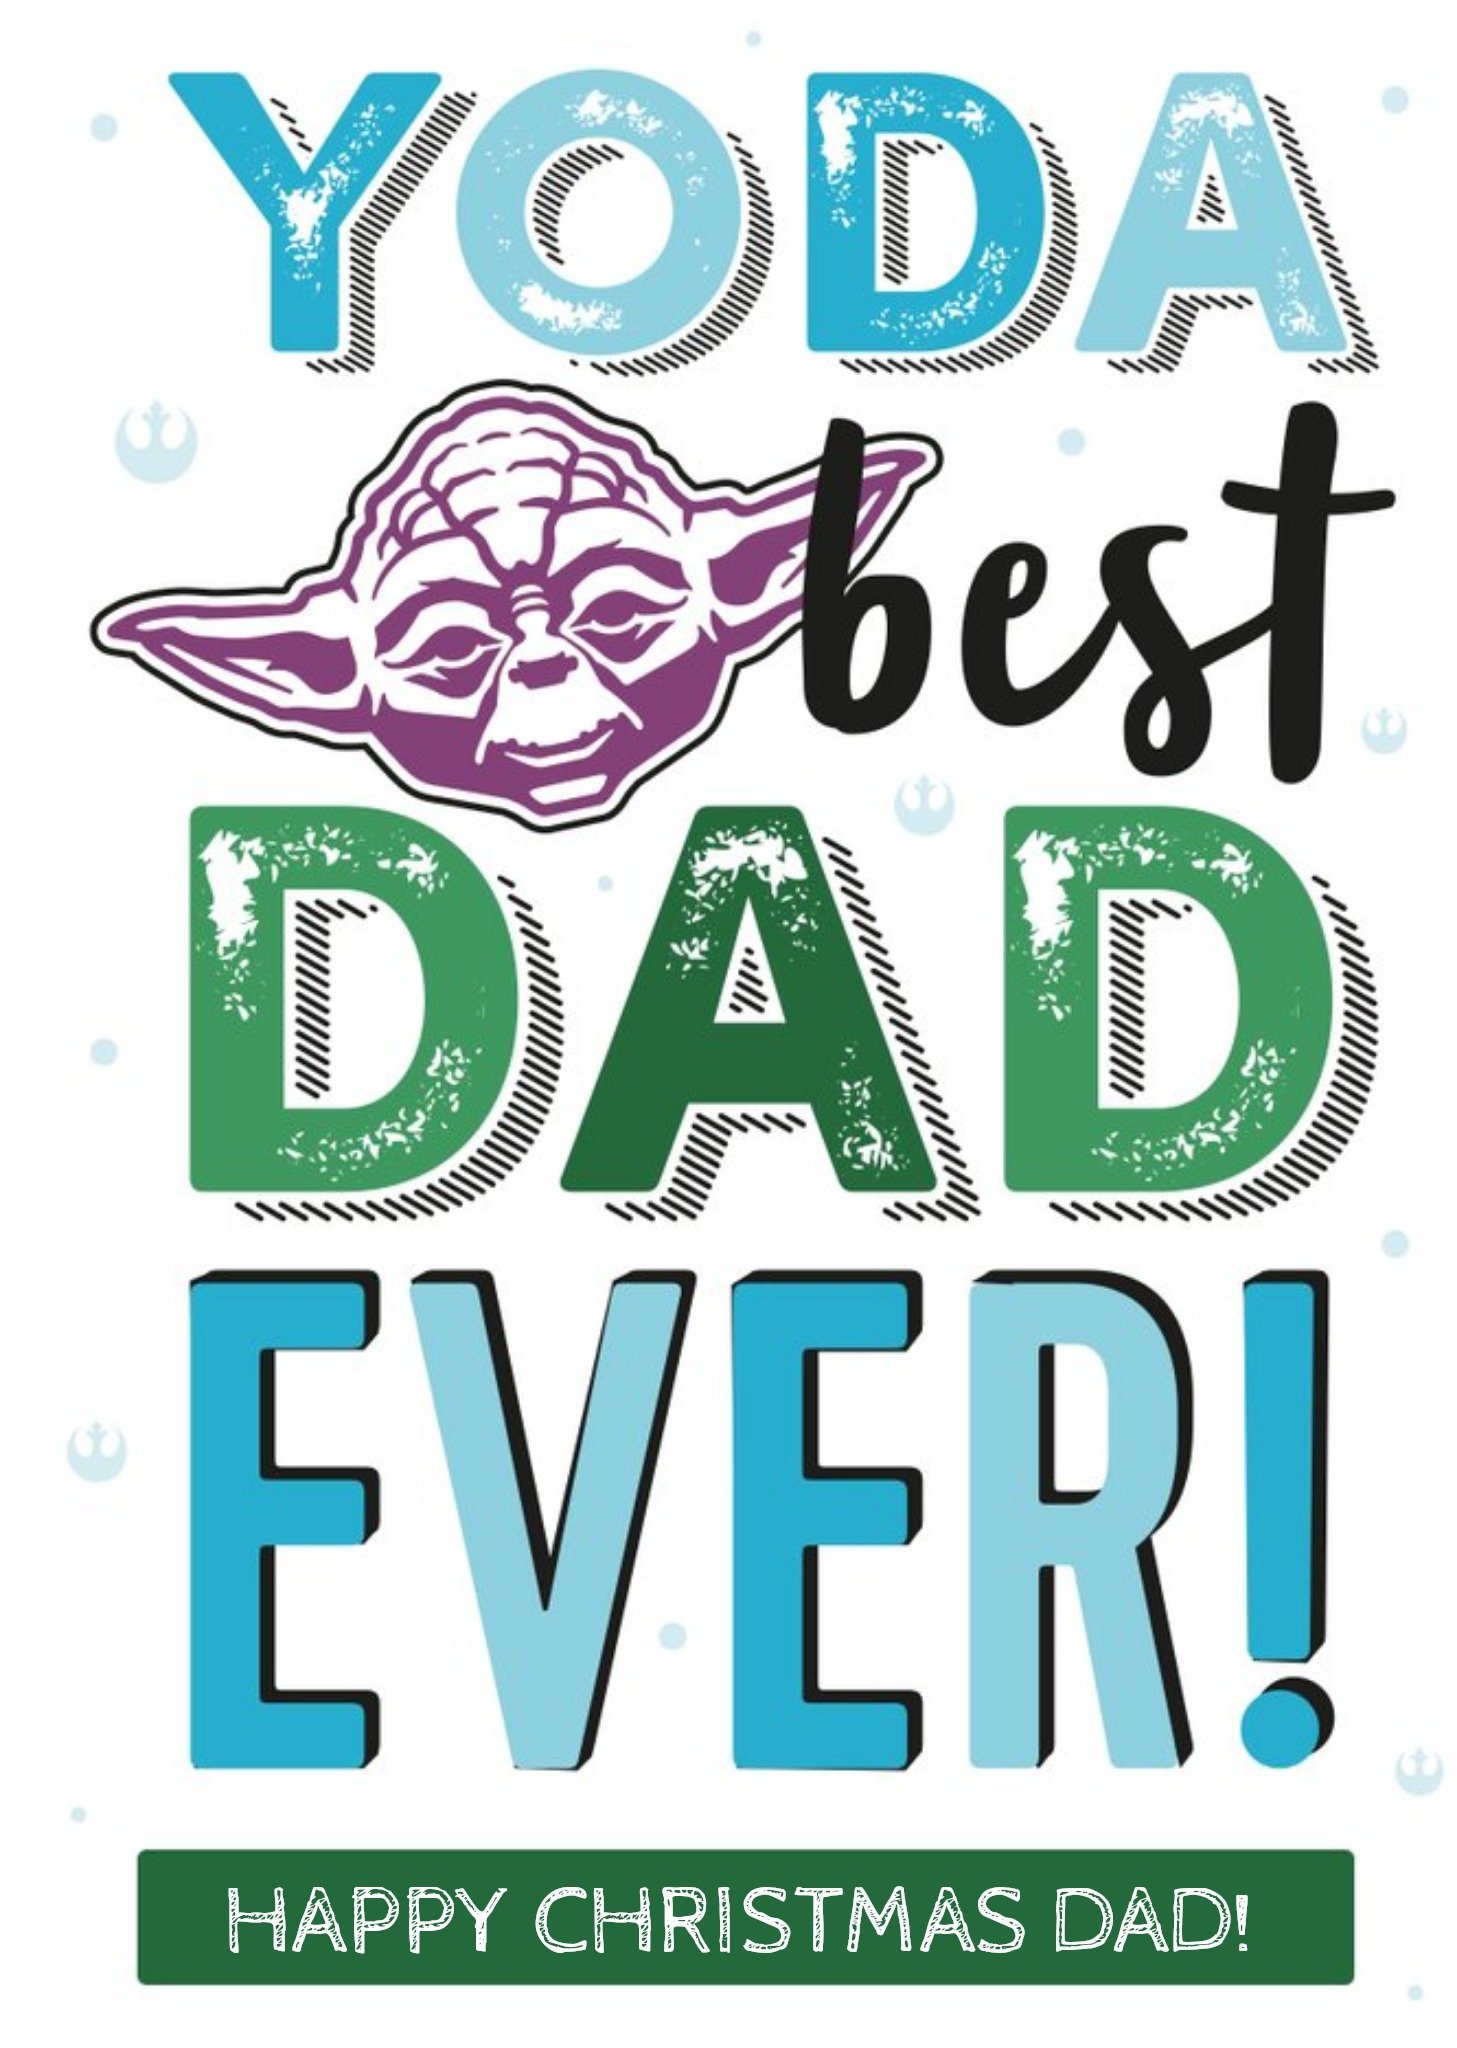 Disney Star Wars Yoda Best Dad Christmas Card, Large